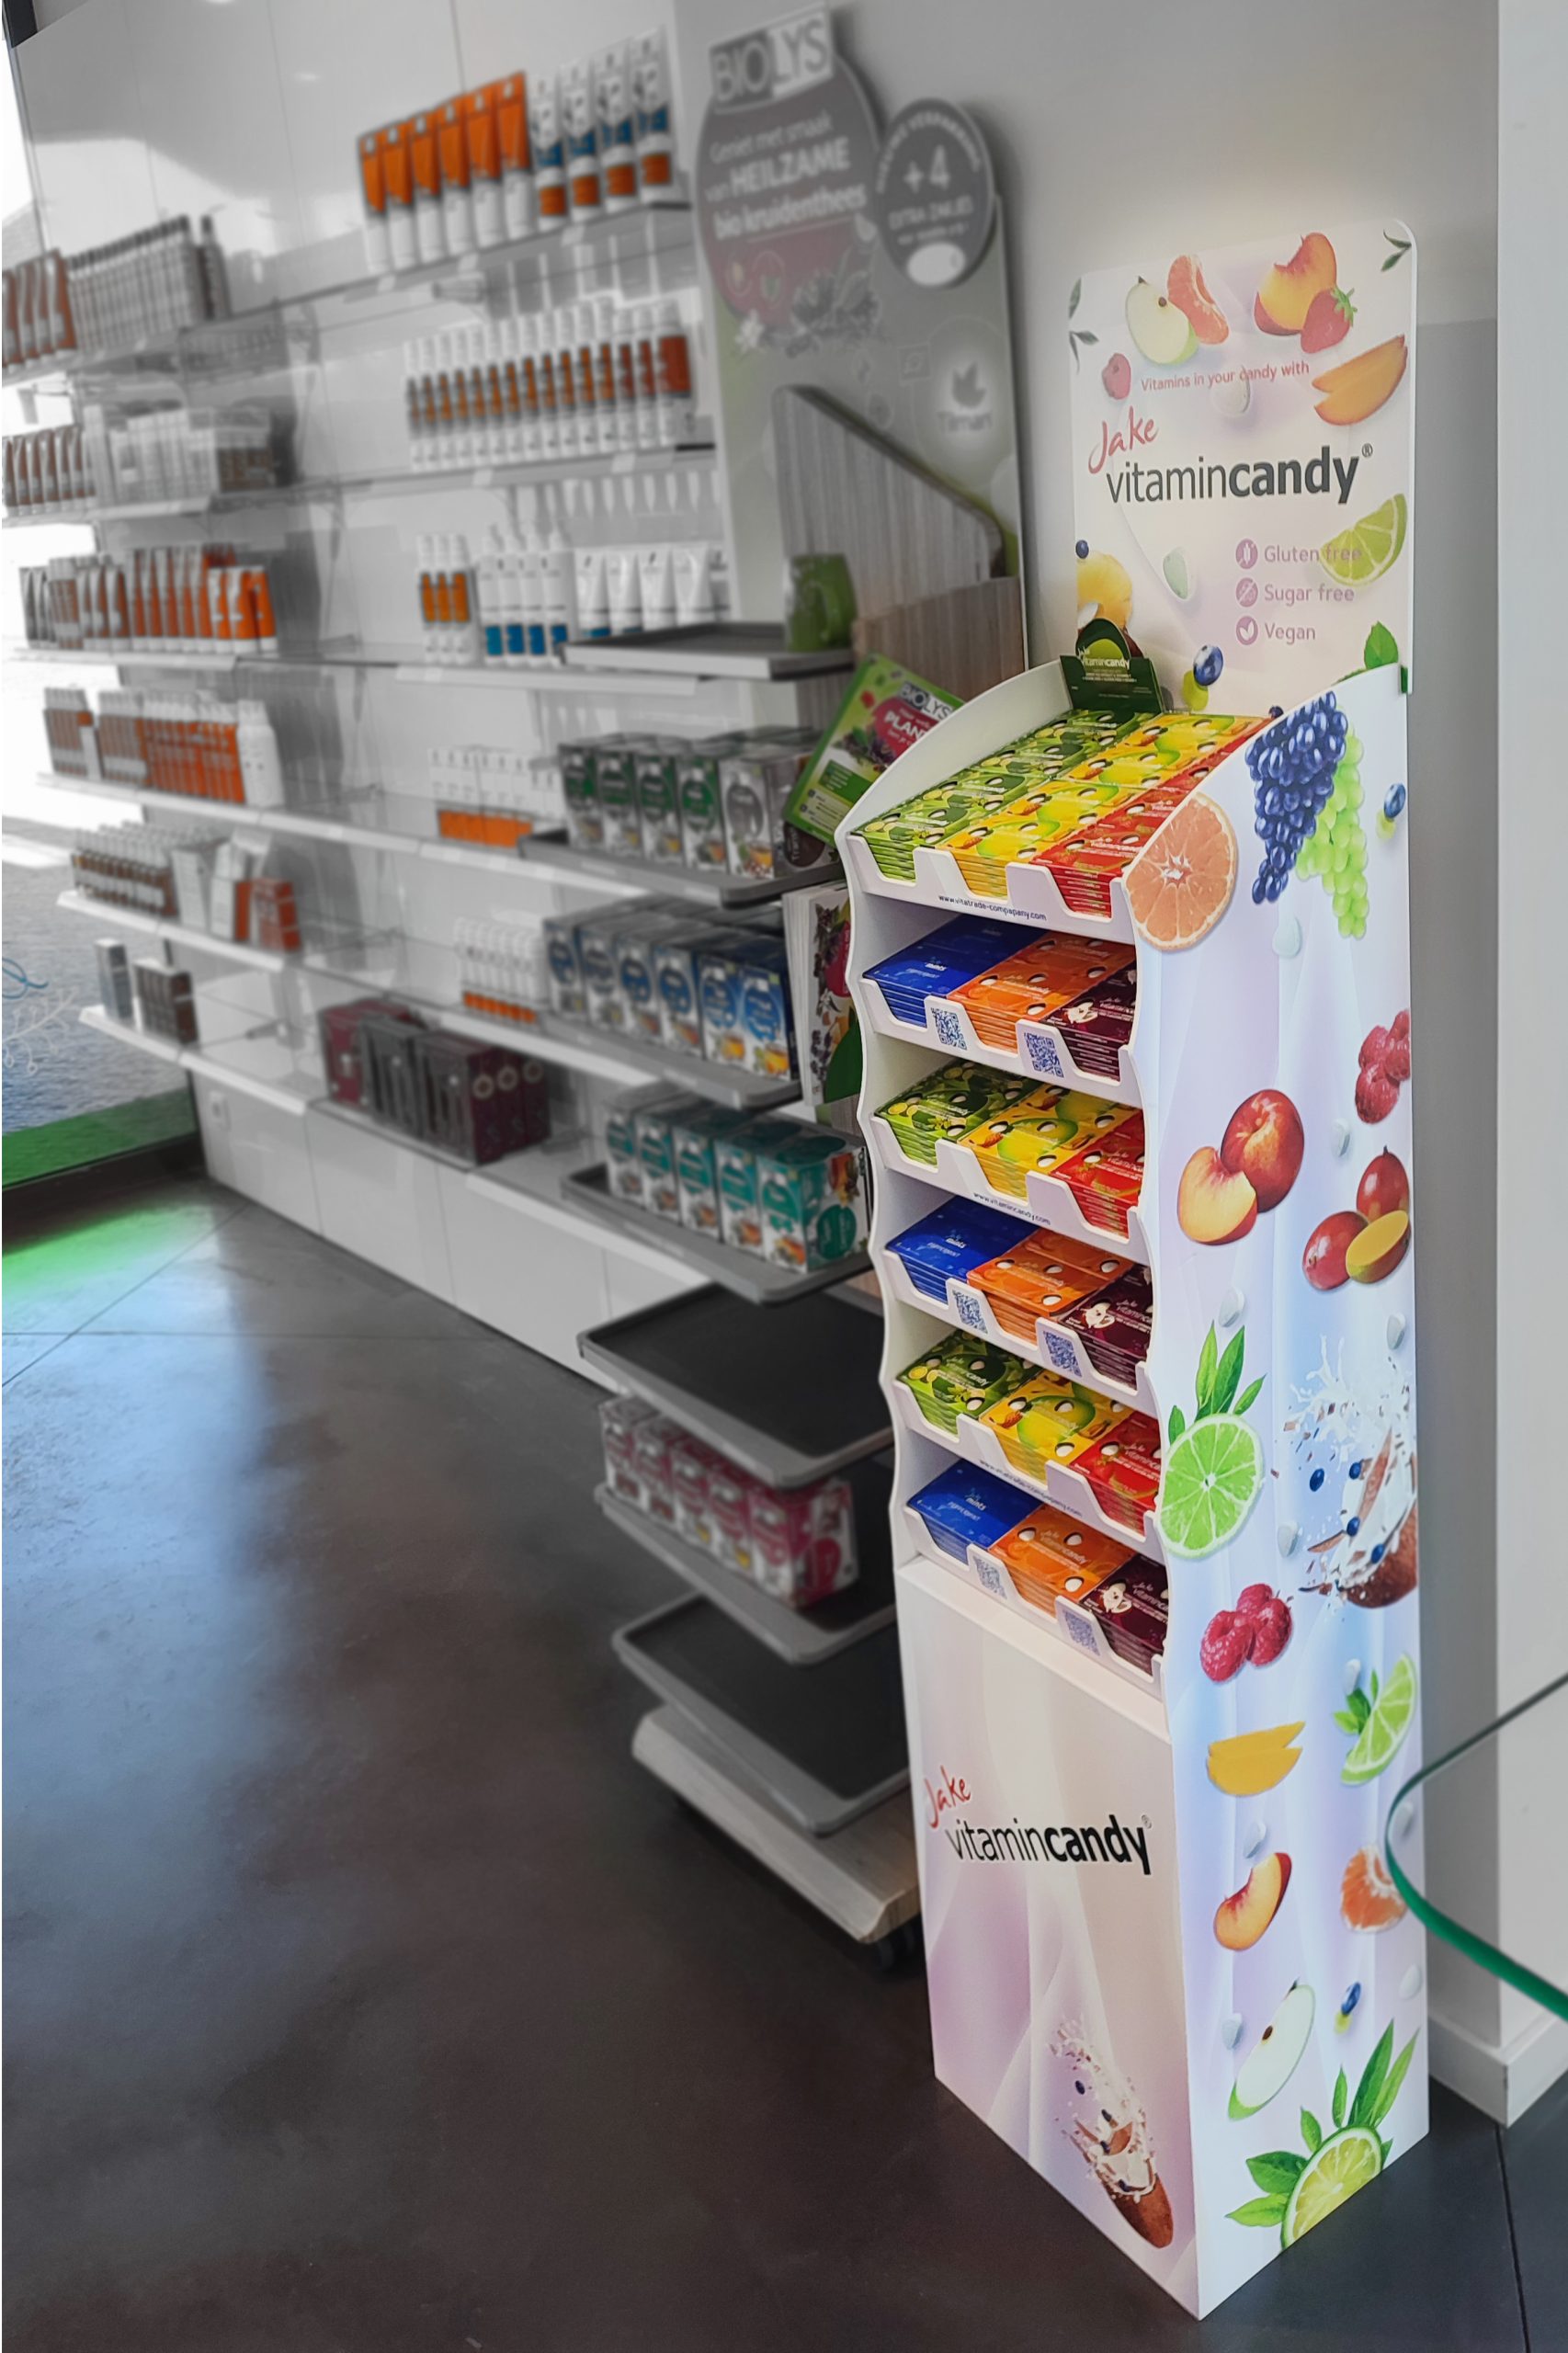 Jake VitaminCandy boost lancering met POS-materiaal op maat